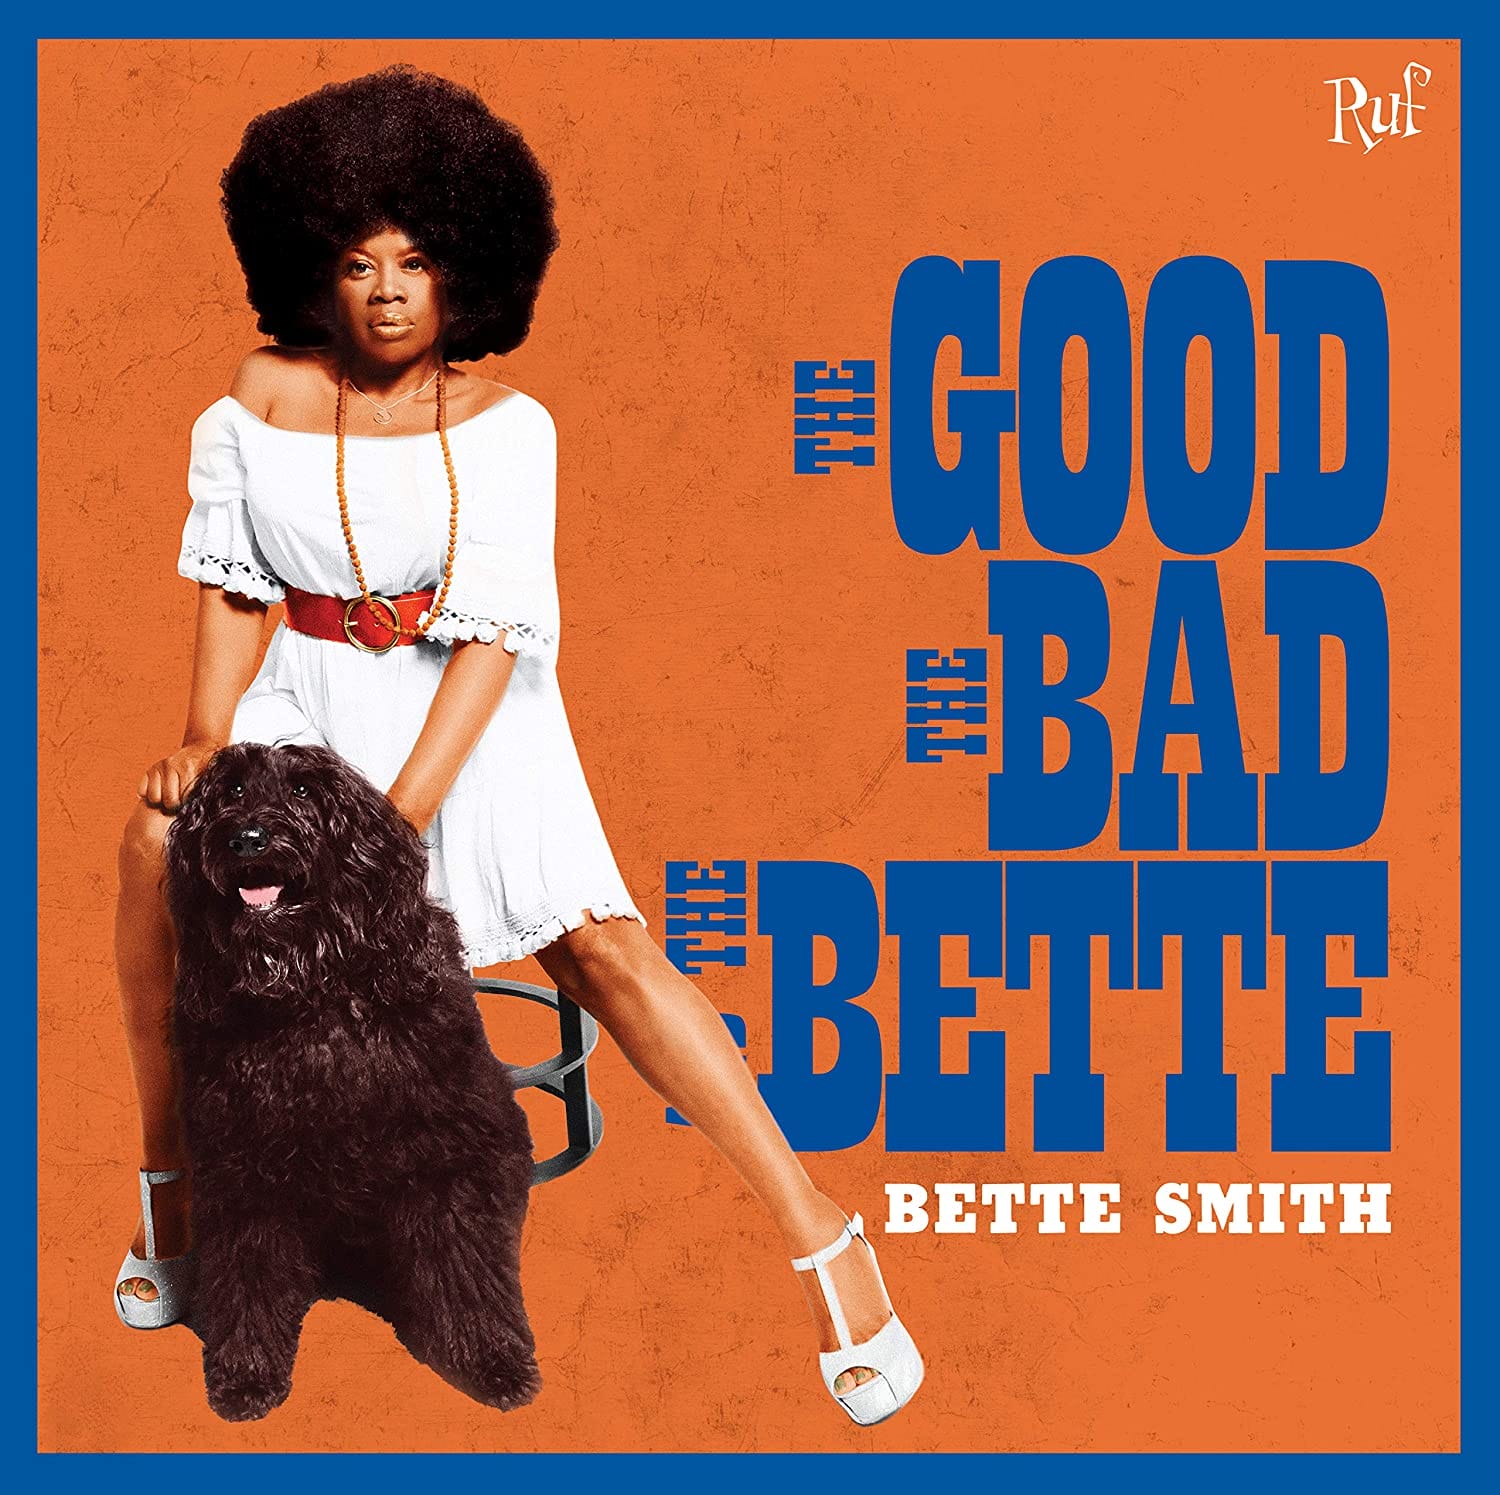 Disco della settimana: Bette Smith “The Good, The Bad and The Bette”